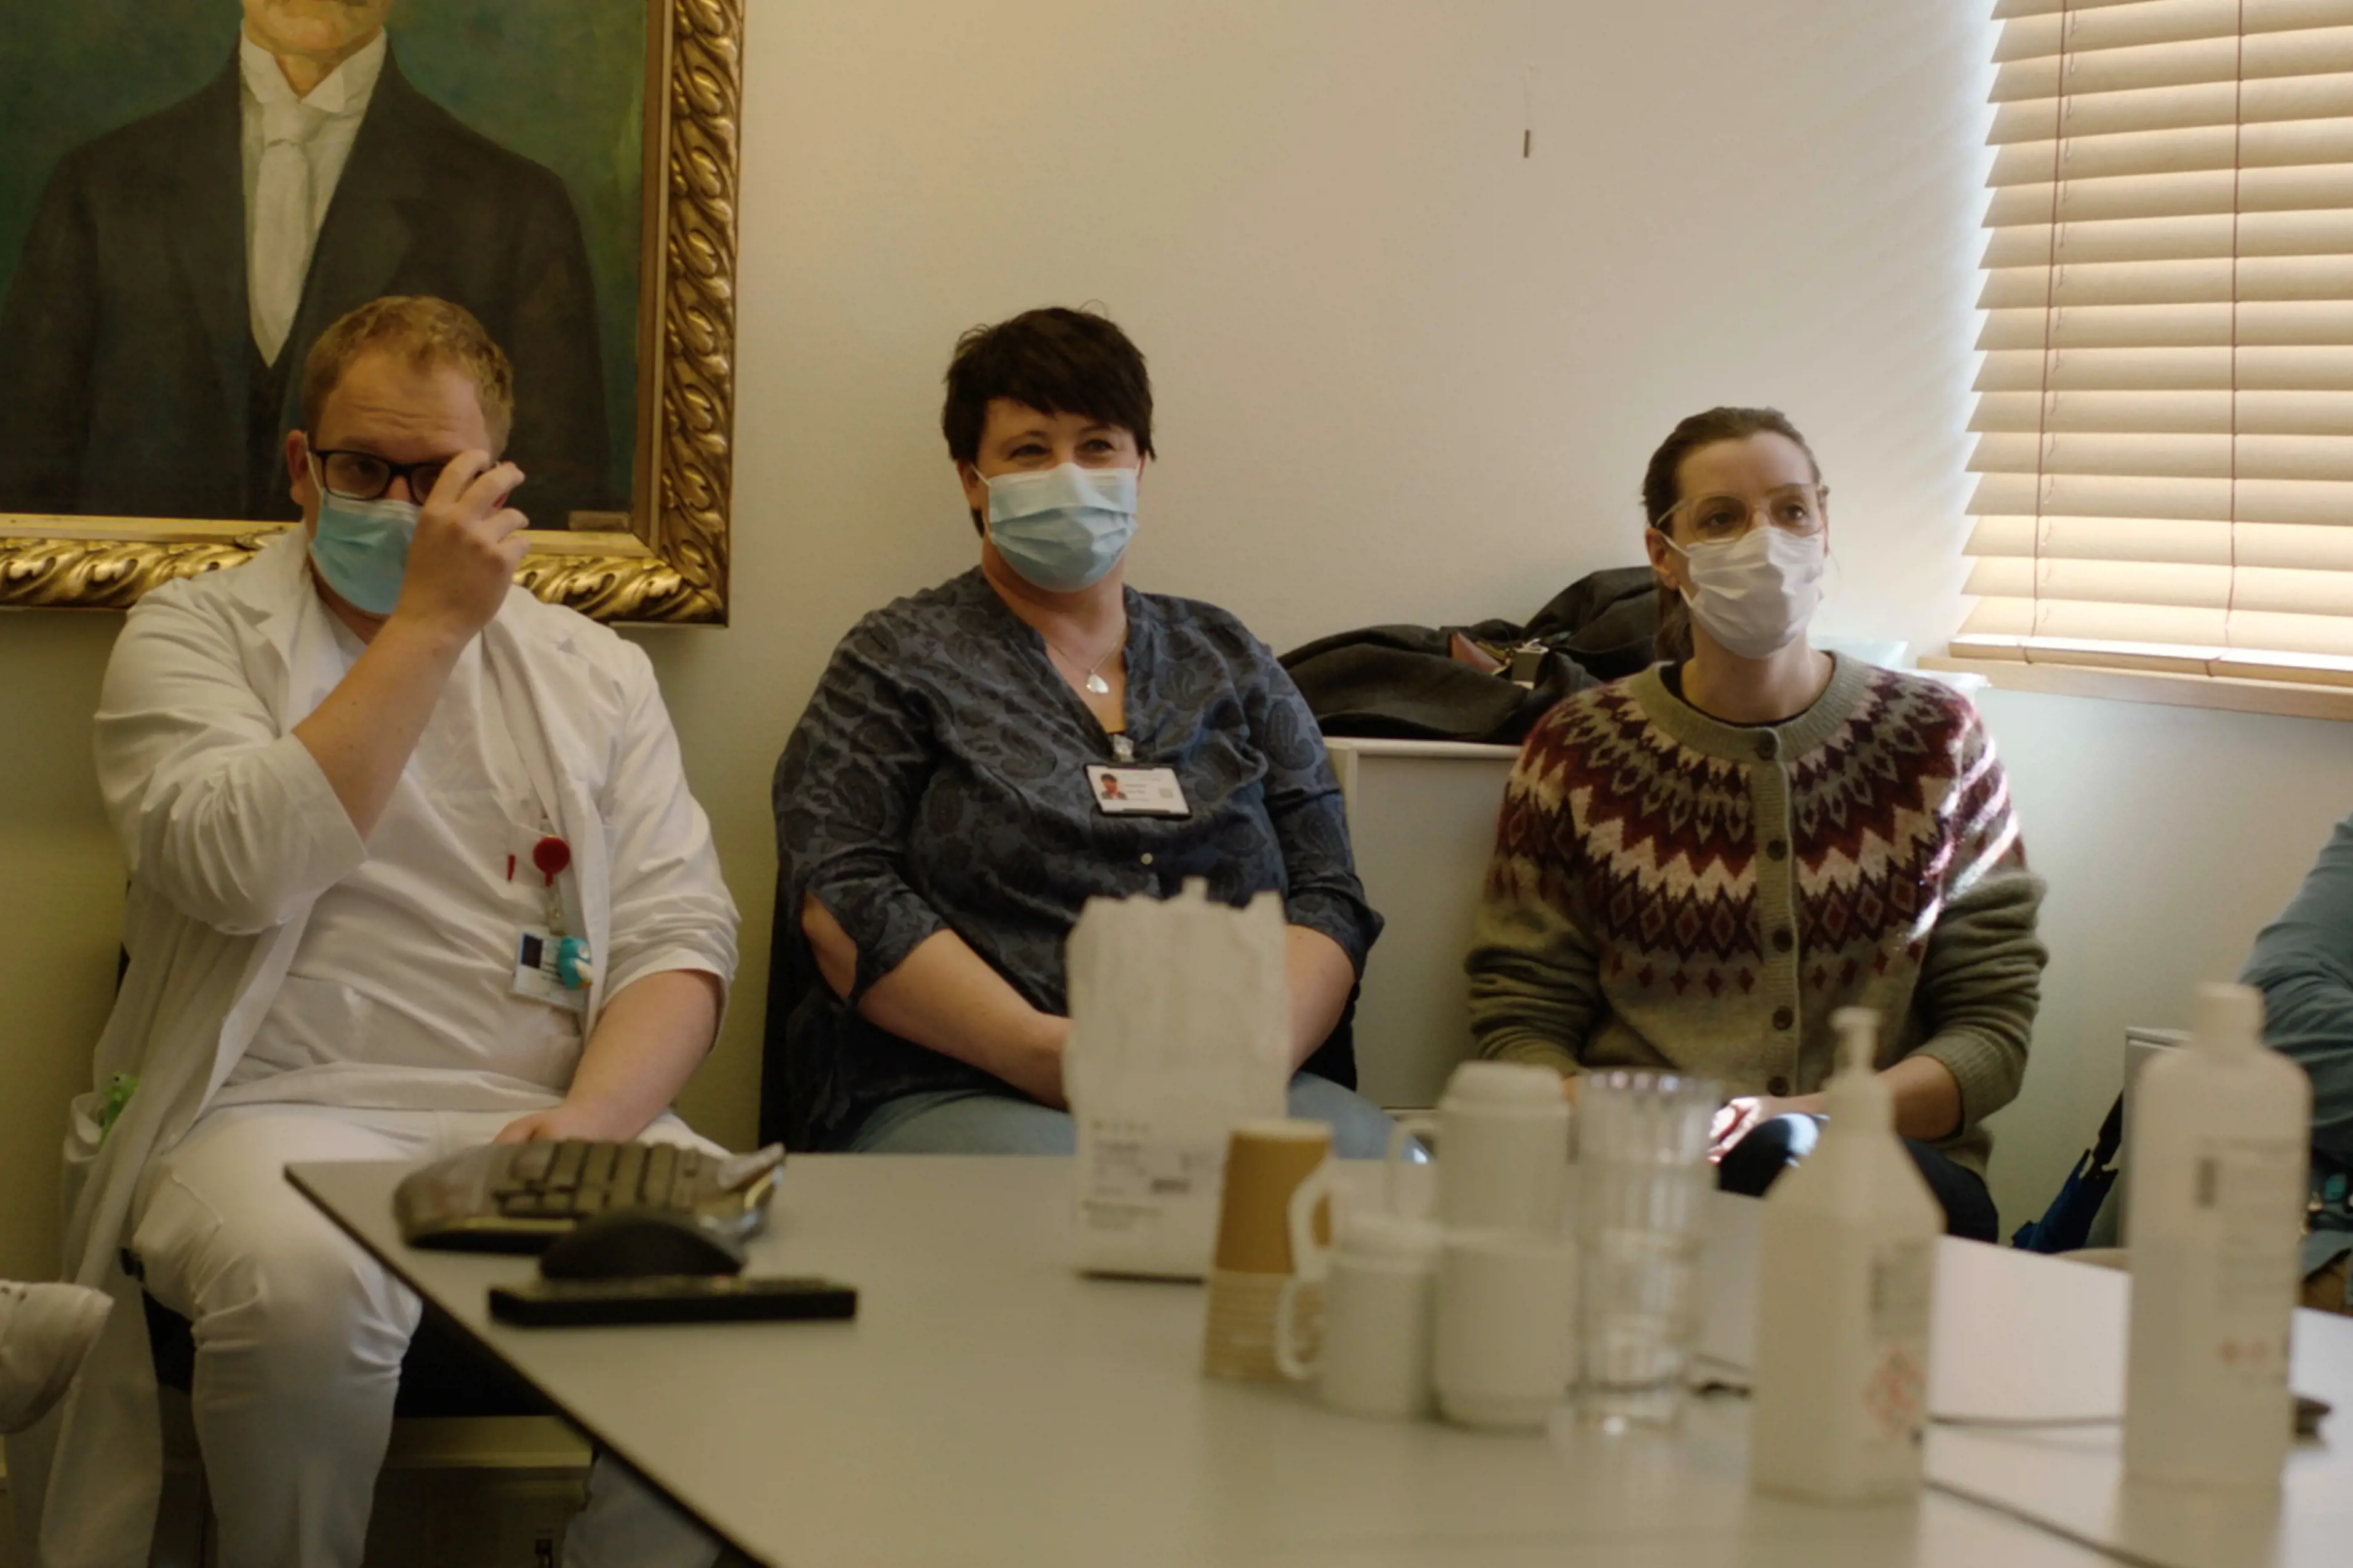 Helsepersonel sit i eit møte, munnbind på. Foto.